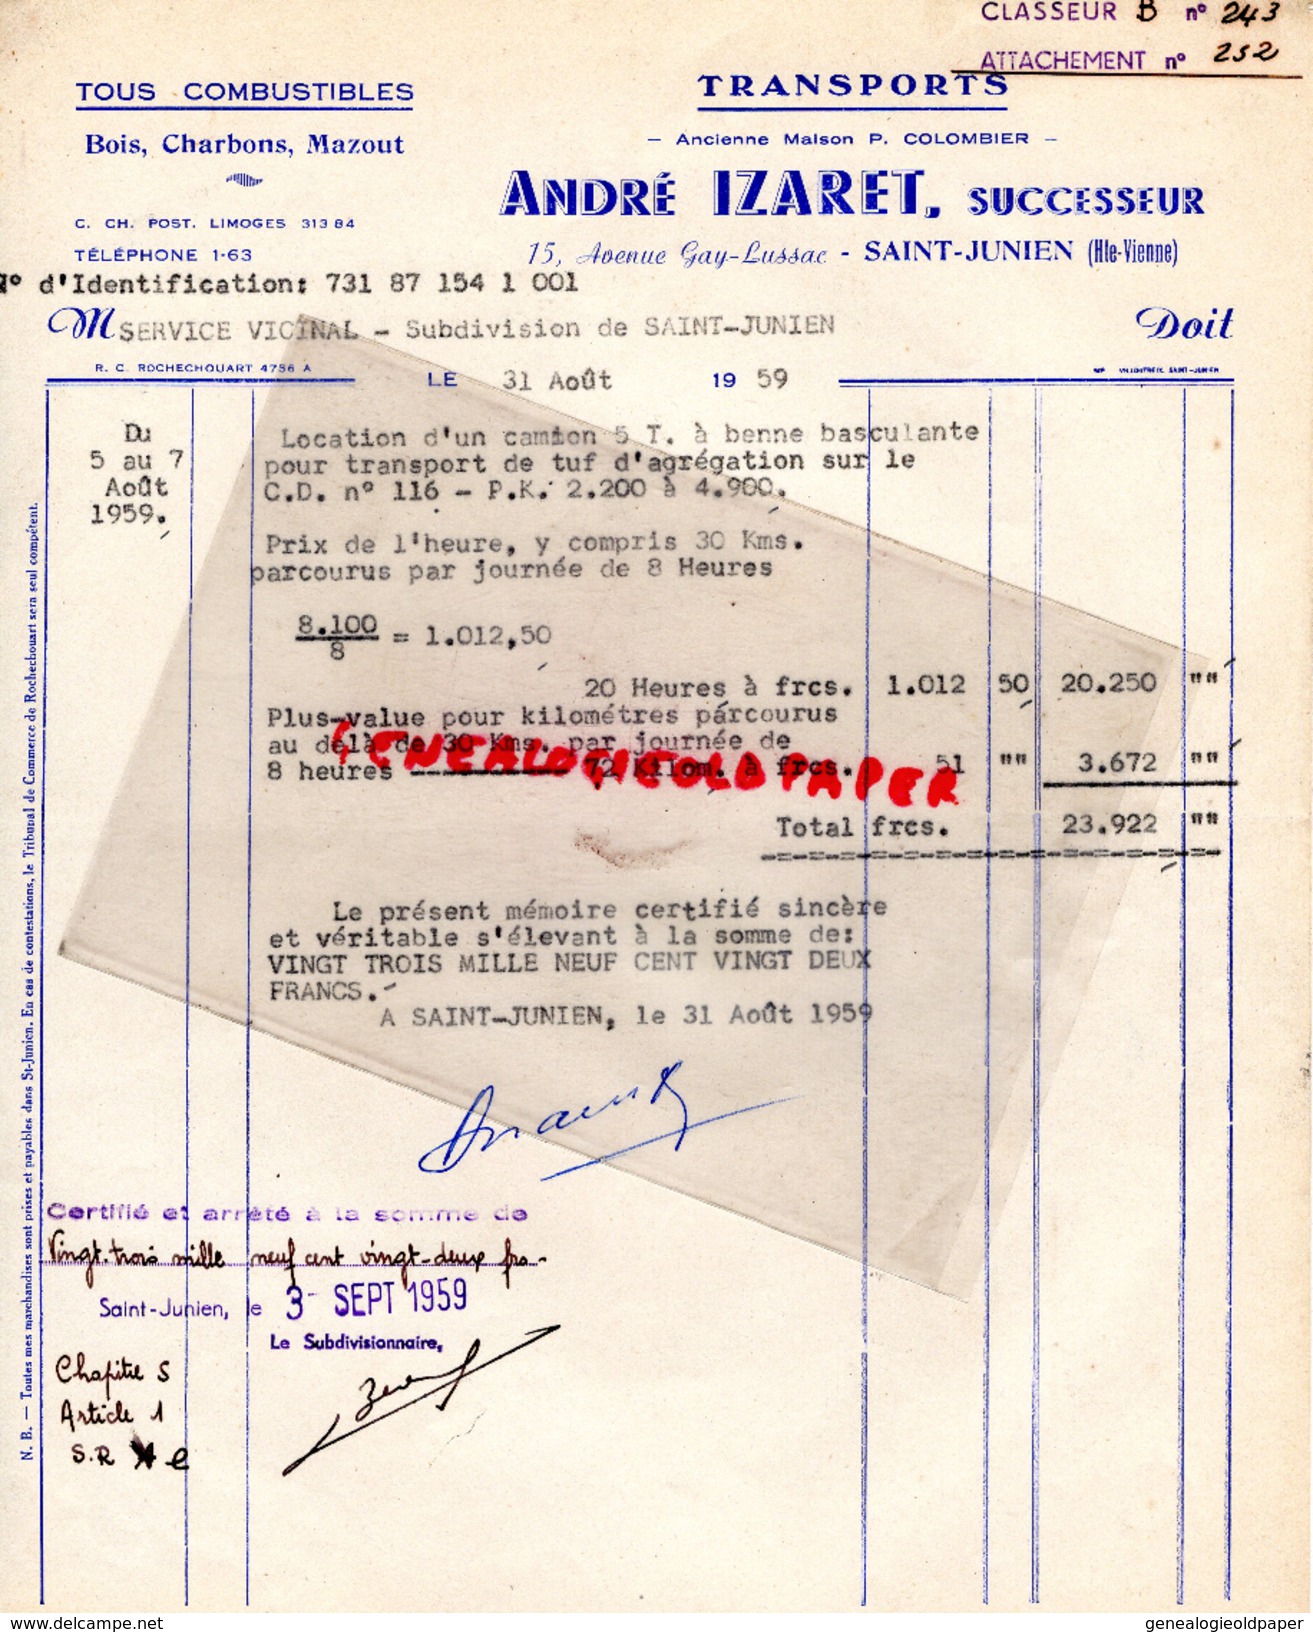 87 -ST  SAINT JUNIEN - FACTURE ANDRE IZARET - TRANSPORTS MAISON P. COLOMBIER- 15 AV. GAY LUSSAC-1959 - Transport